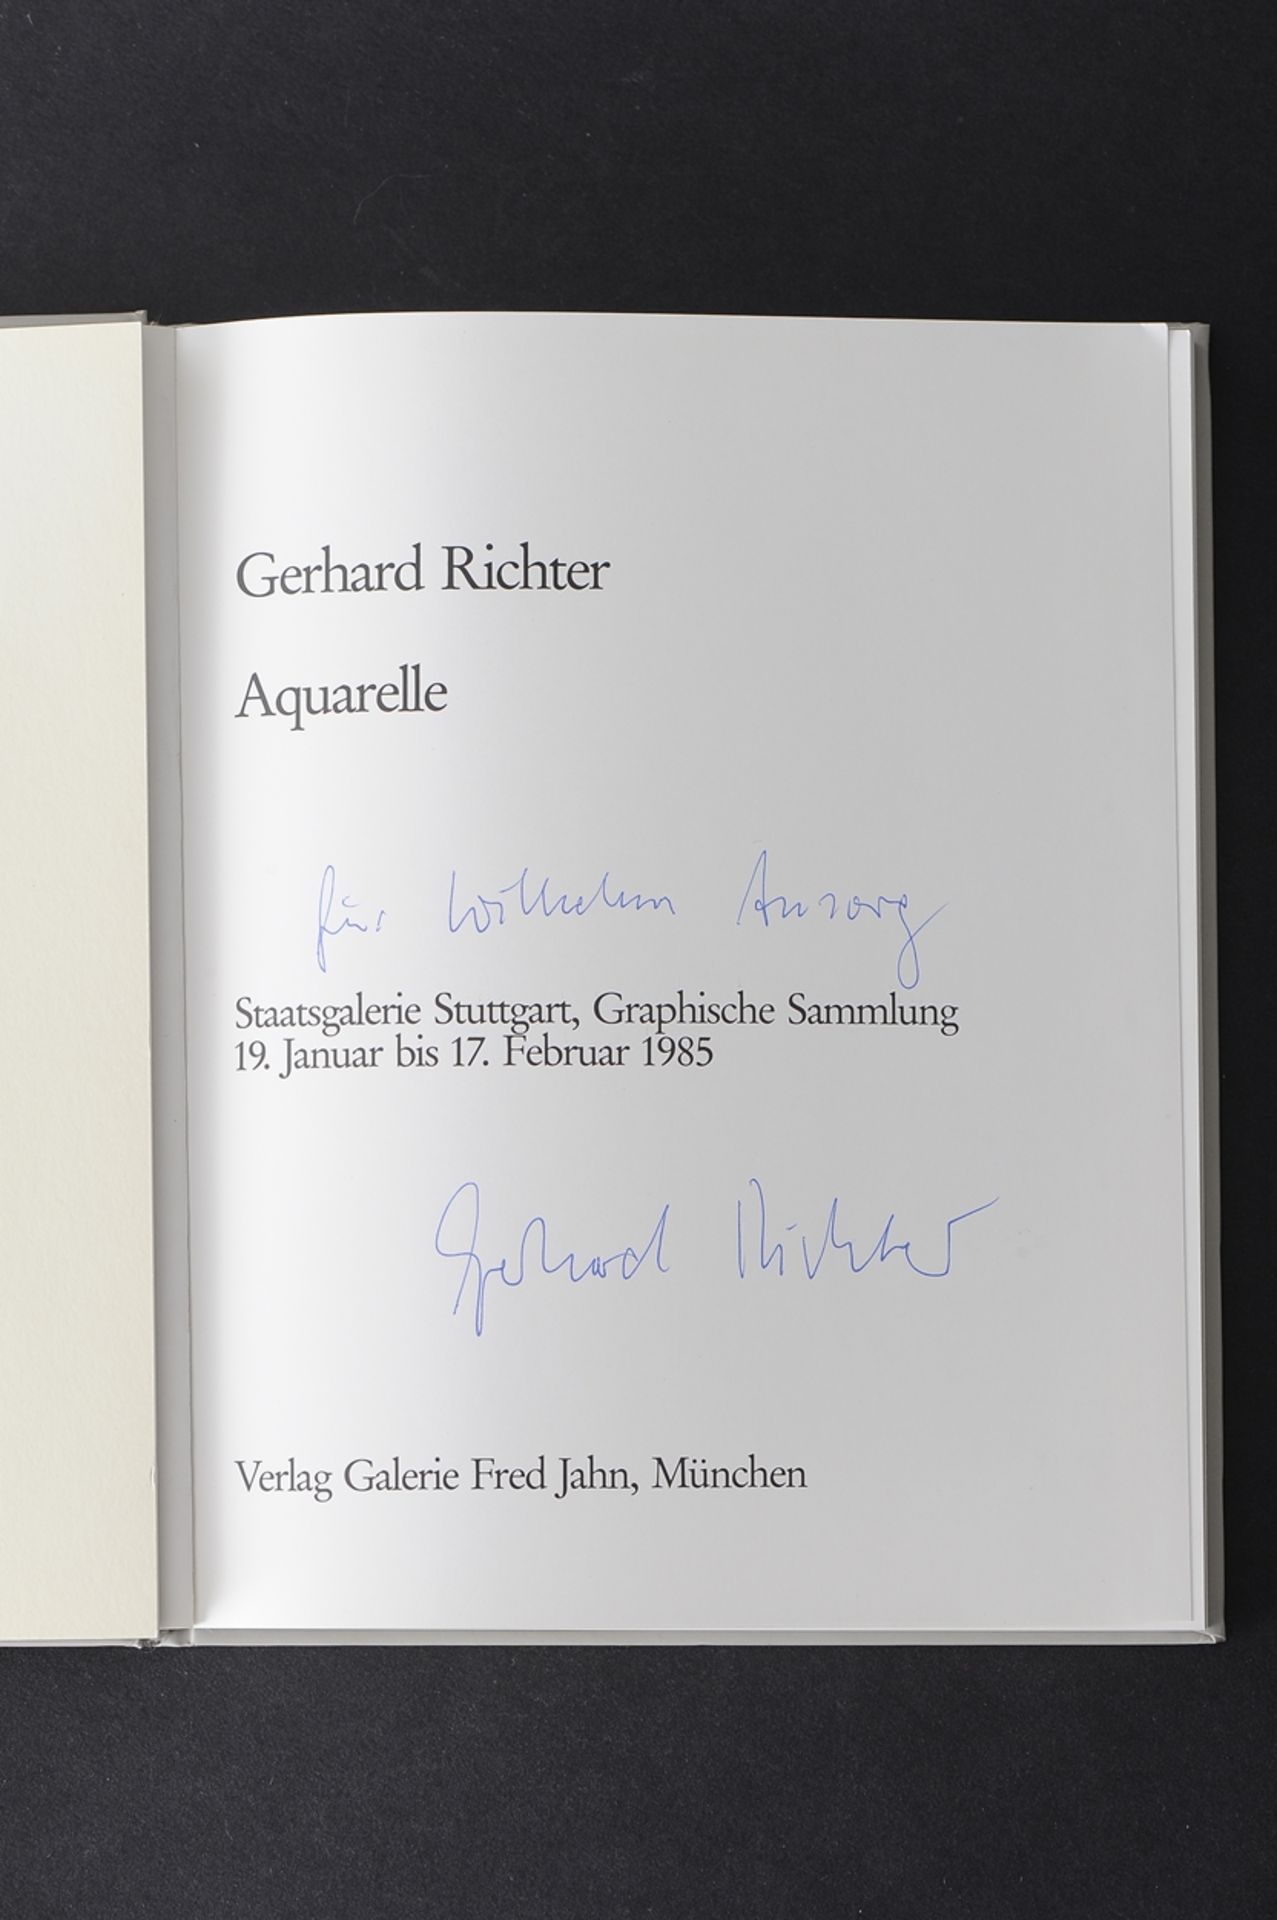 Gerhard Richter - handsigniertes Buch aus der Sammlung des Dr. Wilhelm Ansorg, Goslar. - Image 2 of 2